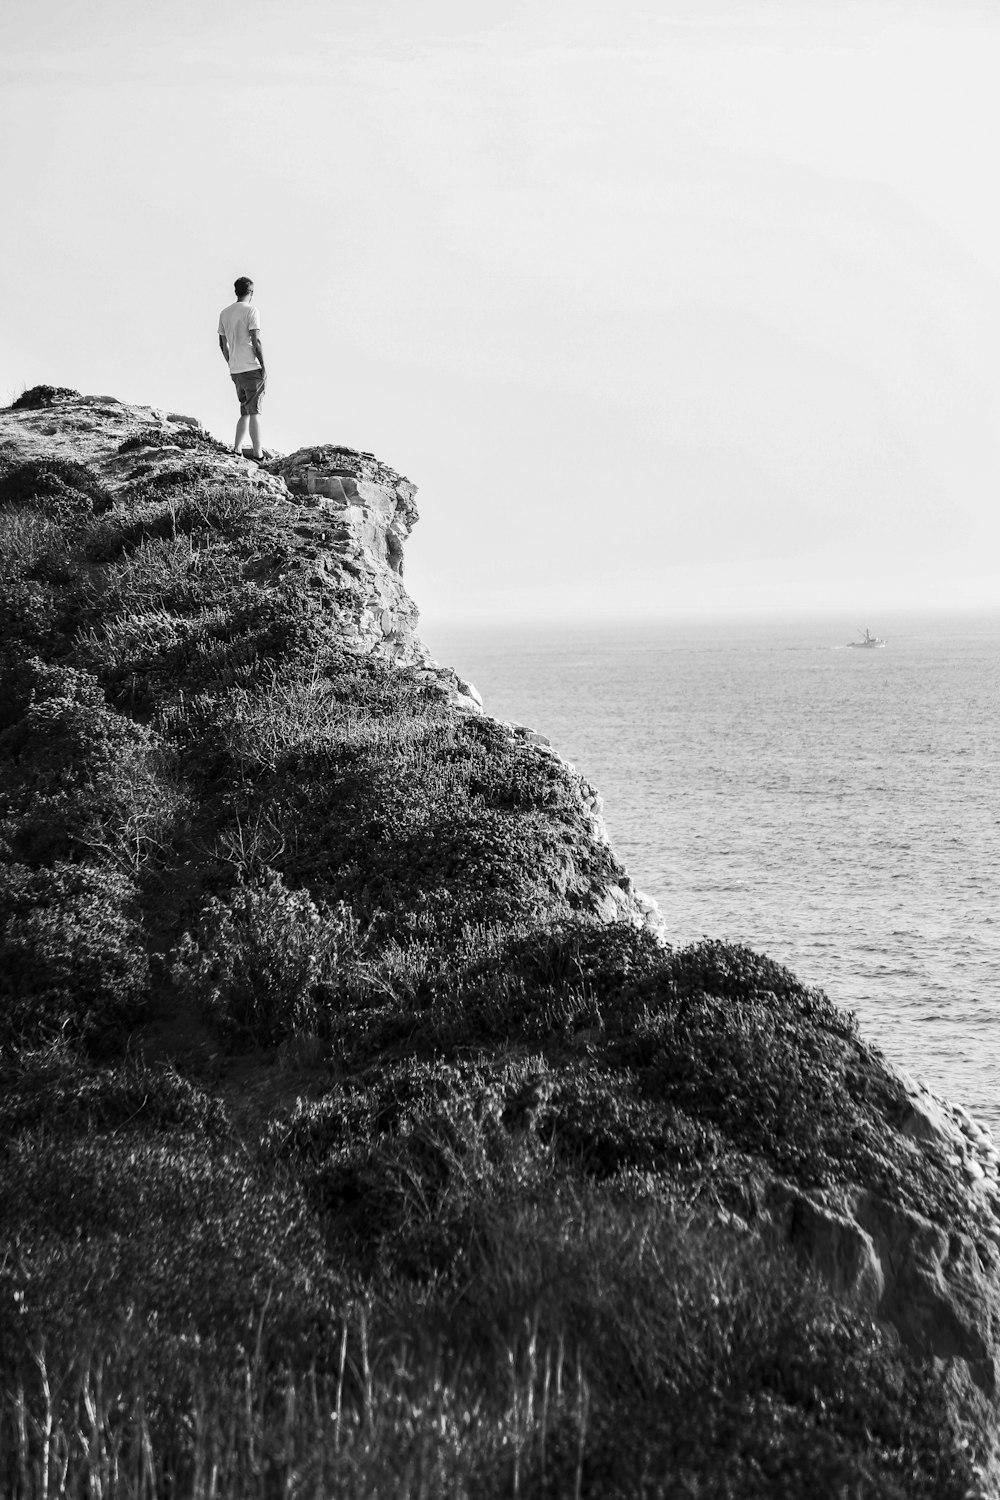 foto em escala de cinza da pessoa em pé na formação rochosa perto do corpo de água